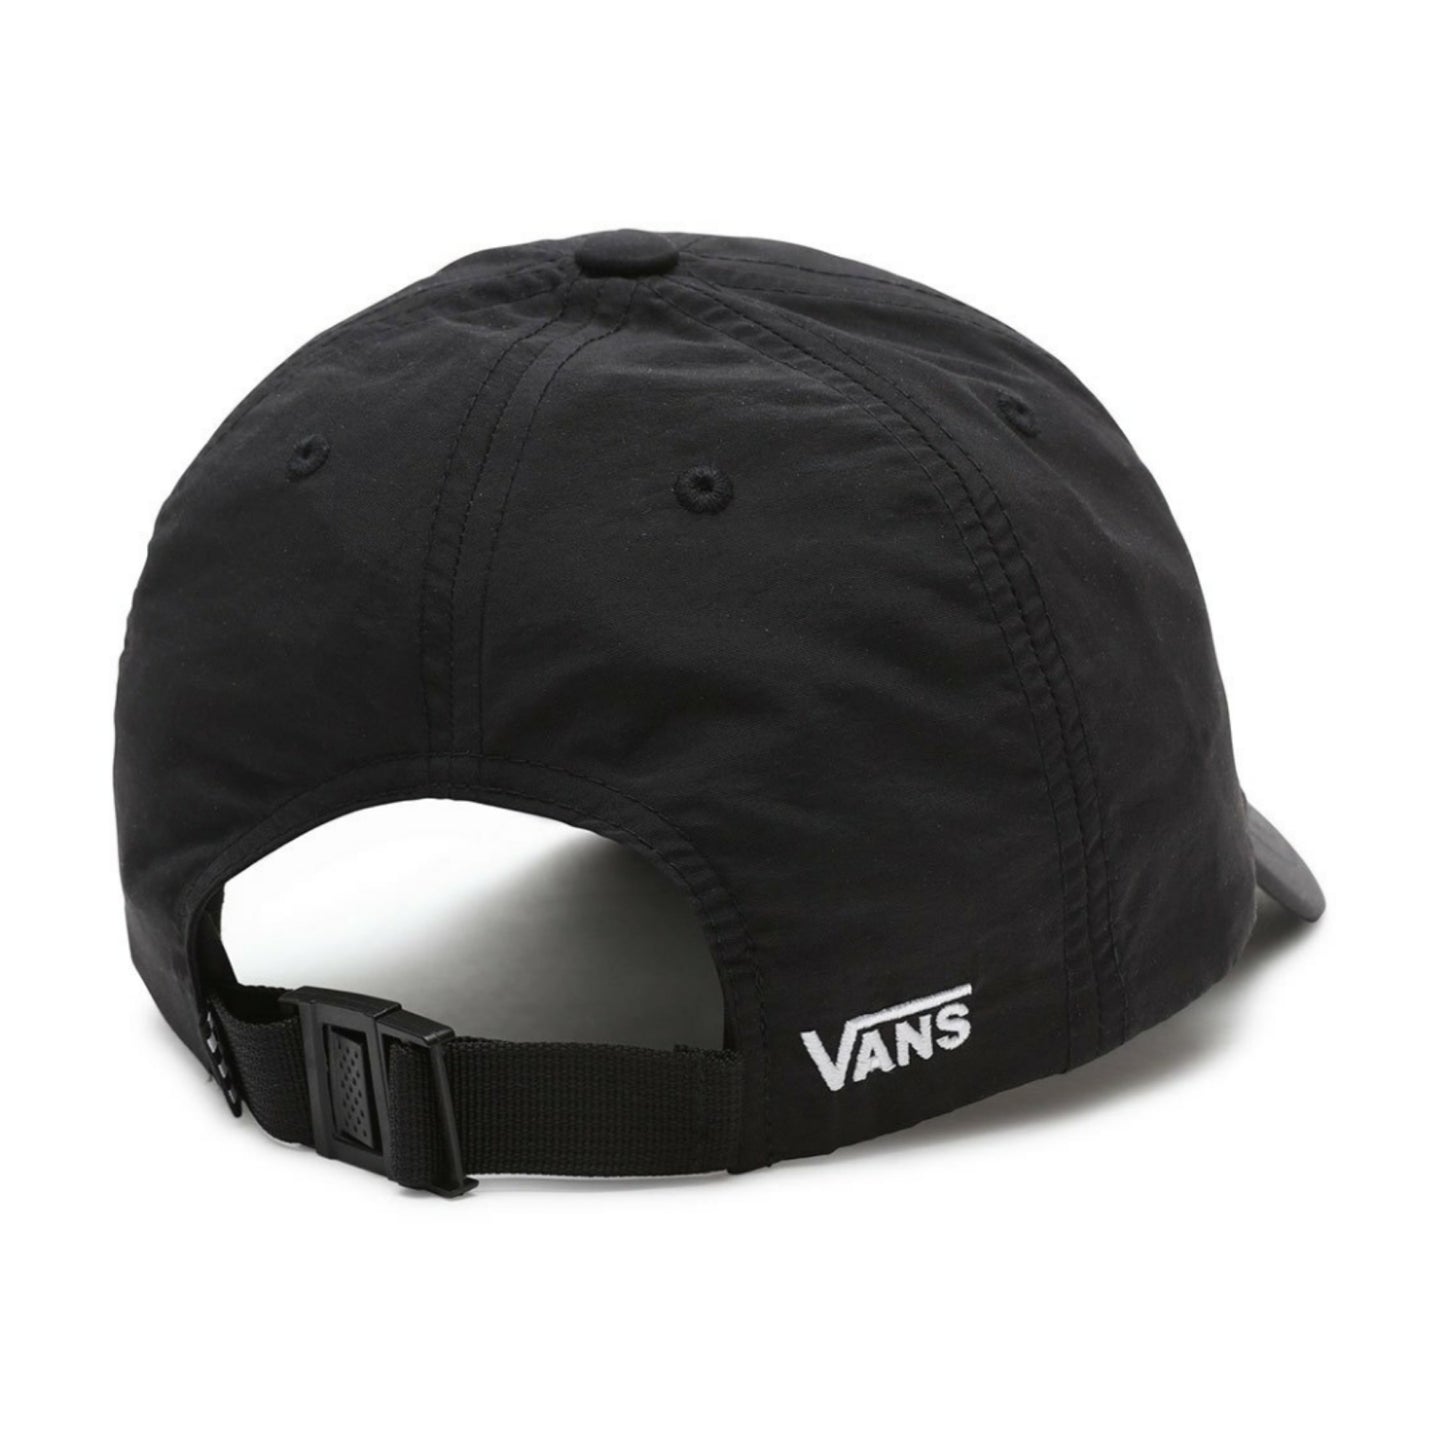 Vans Nylon Court Side Hat Black White